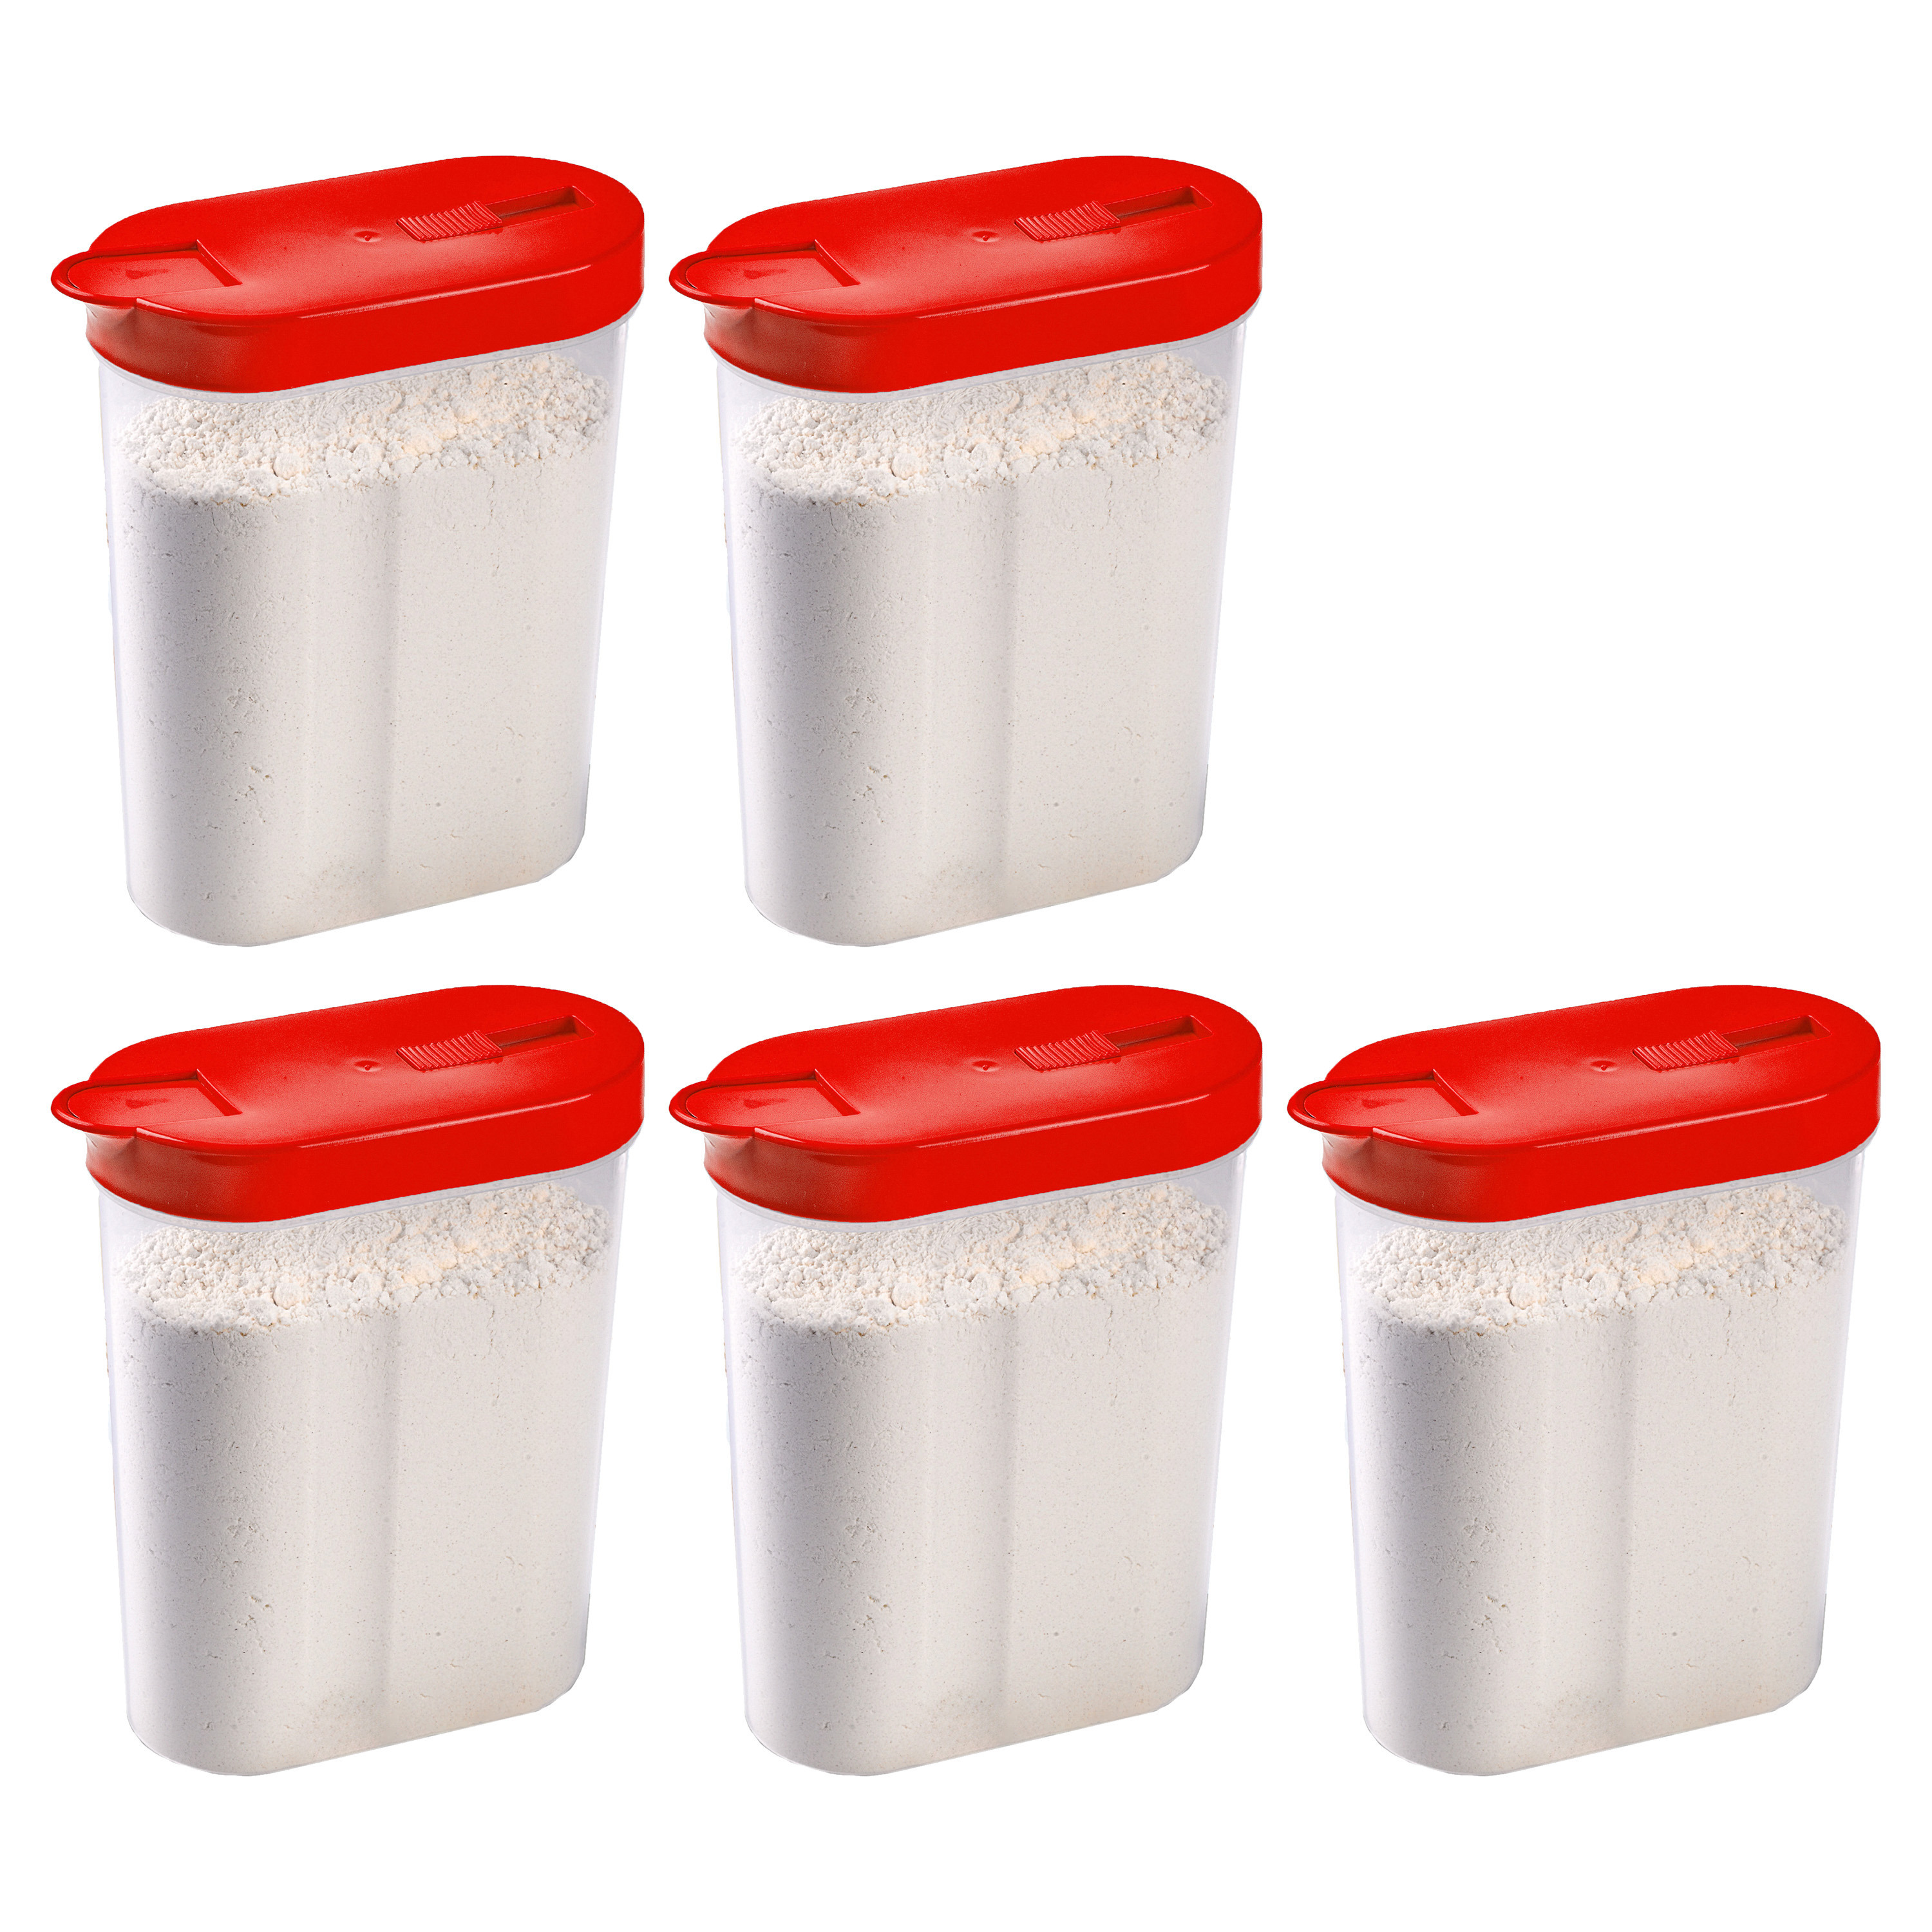 PlasticForte Voedselcontainer strooibus - 2x - rood - inhoud 1 liter - kunststof - 15 x 7 x 19 cm -